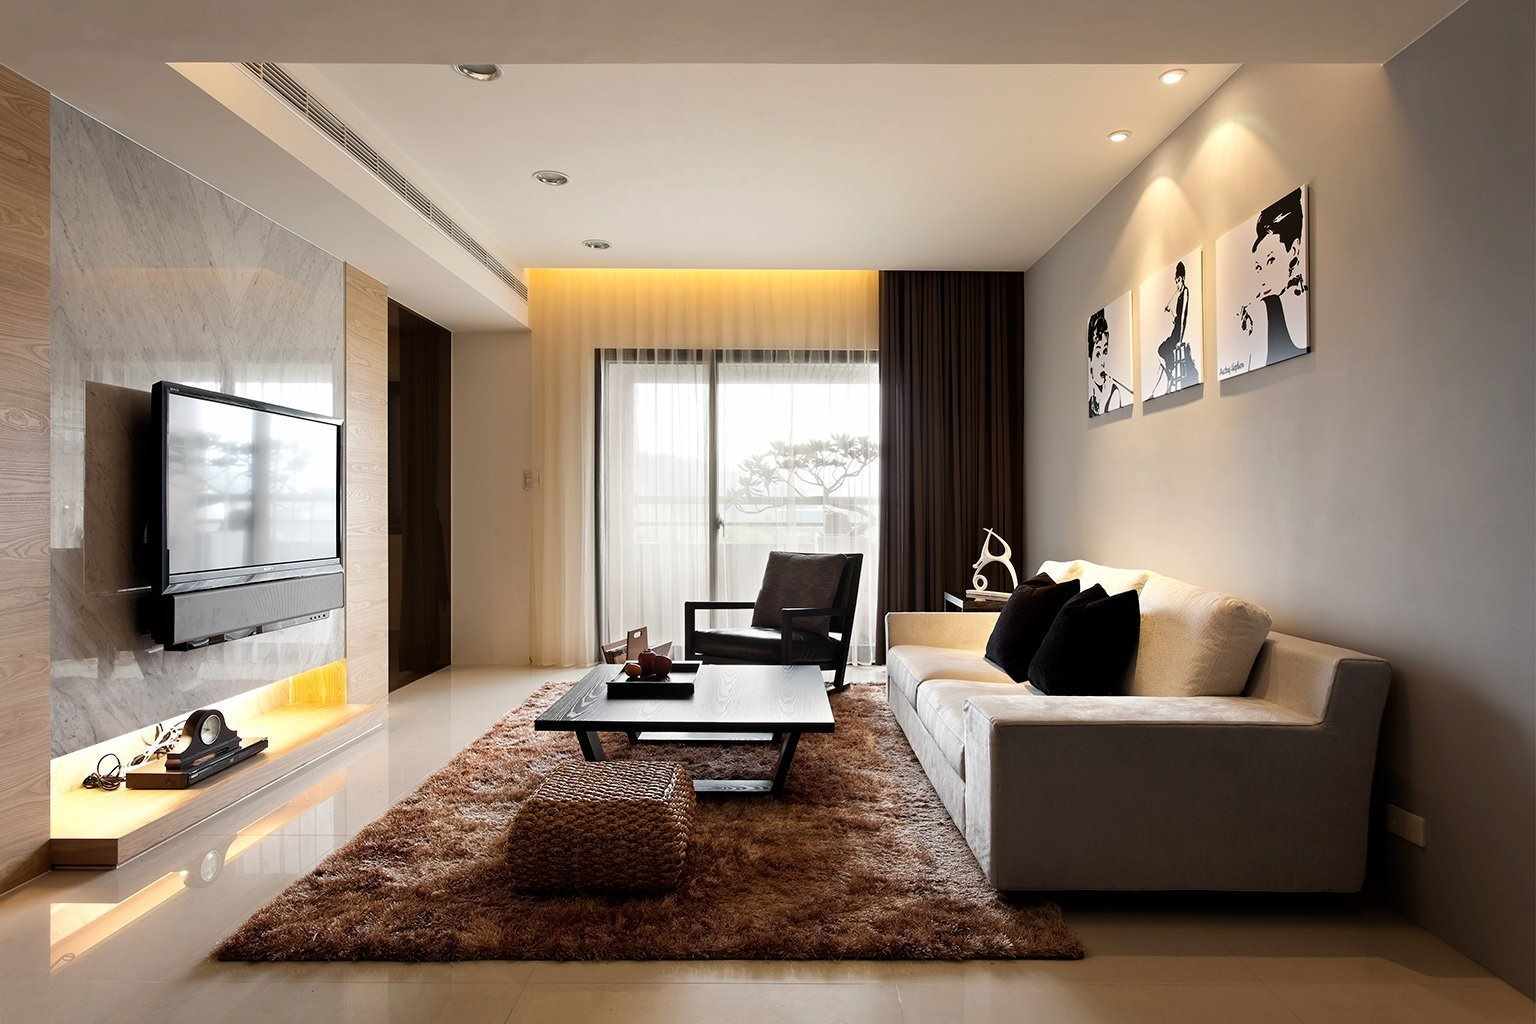 um exemplo de aplicação de um design incomum de uma sala de estar no estilo do minimalismo